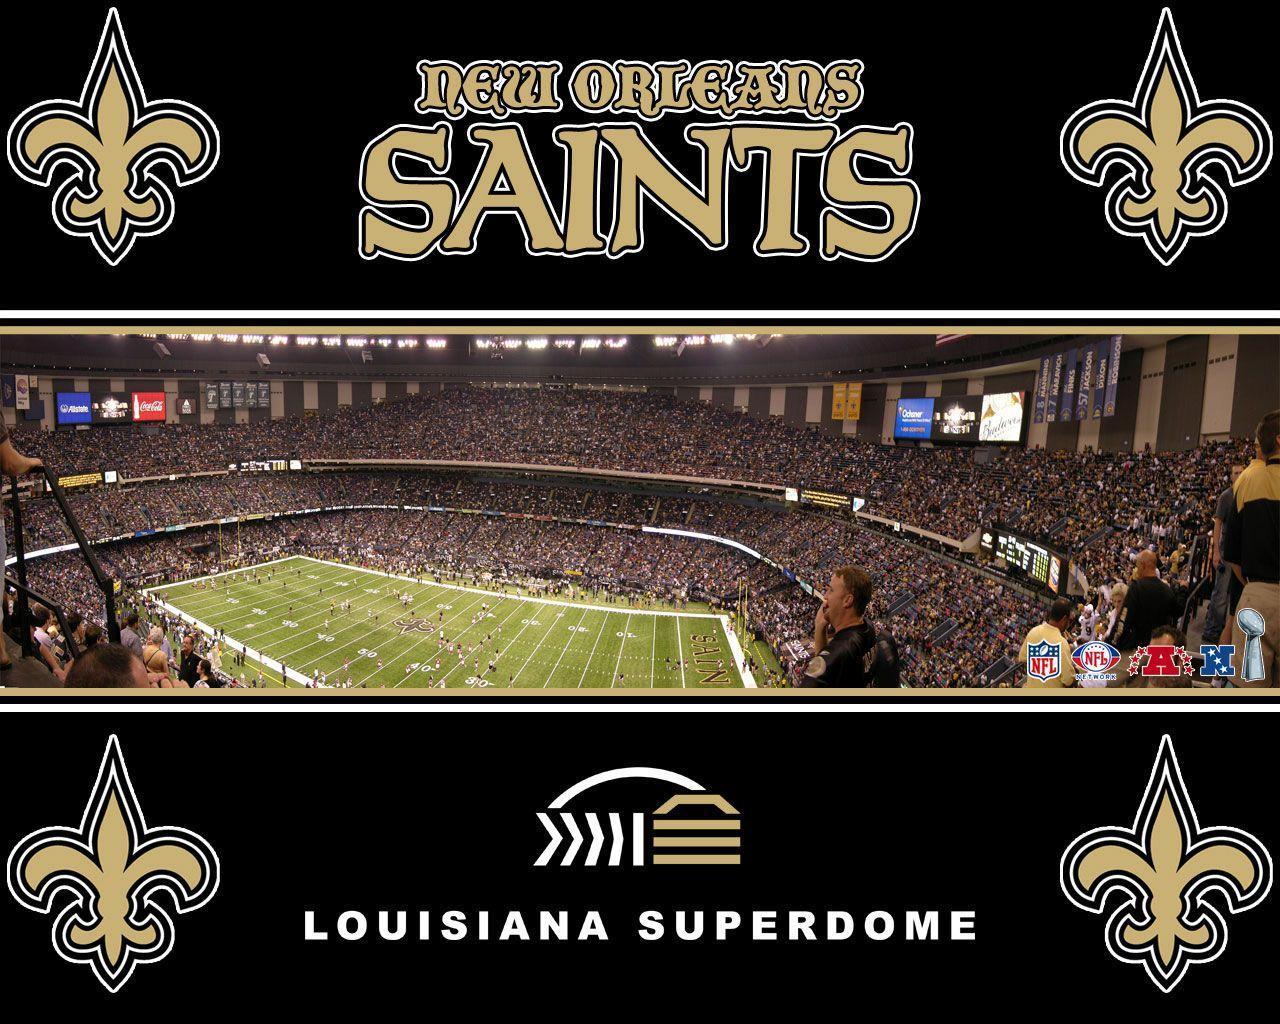 New Orleans Saints Desktop Wallpaper